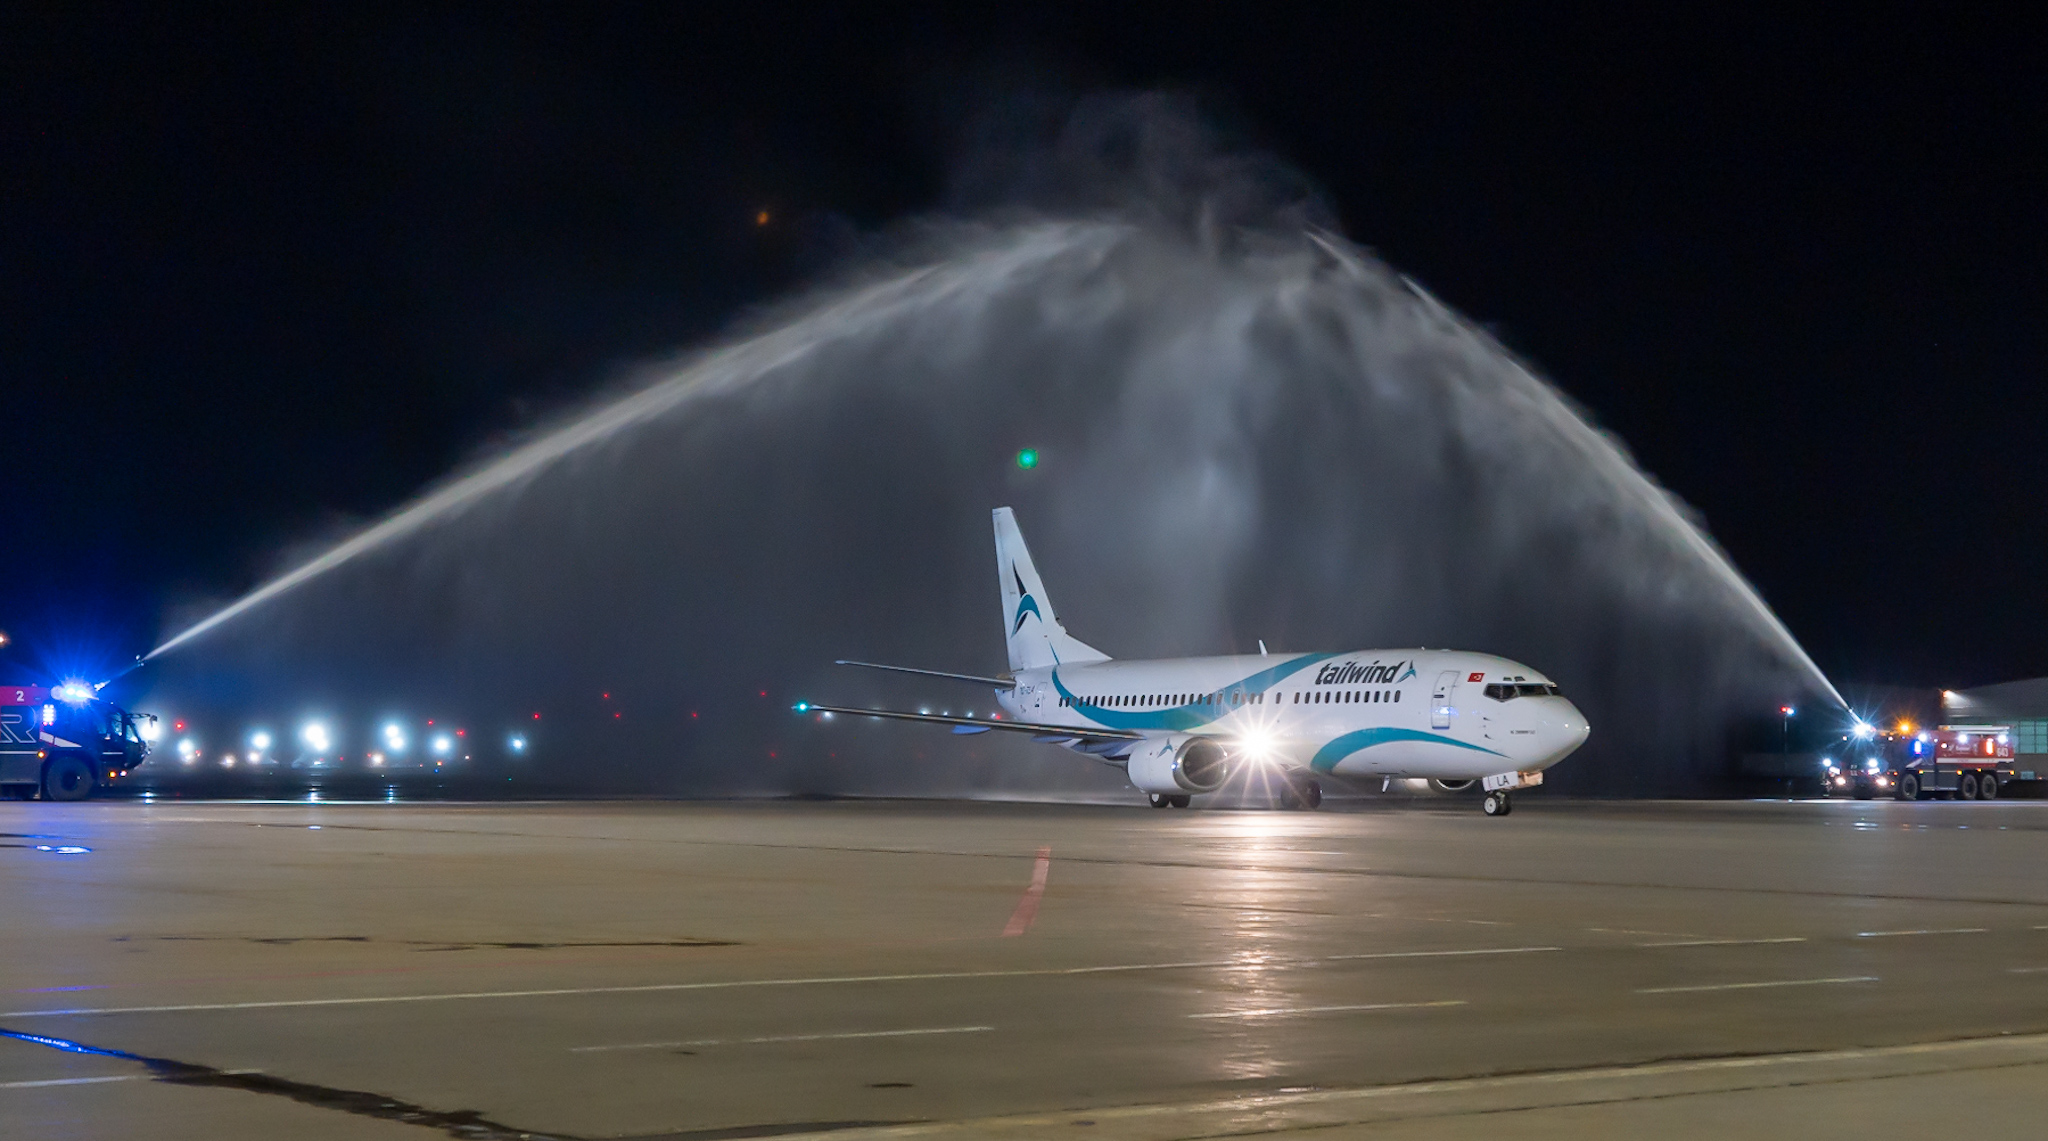 Международный аэропорт Внуково приветствует нового партнера - авиакомпанию Tailwind Airlines